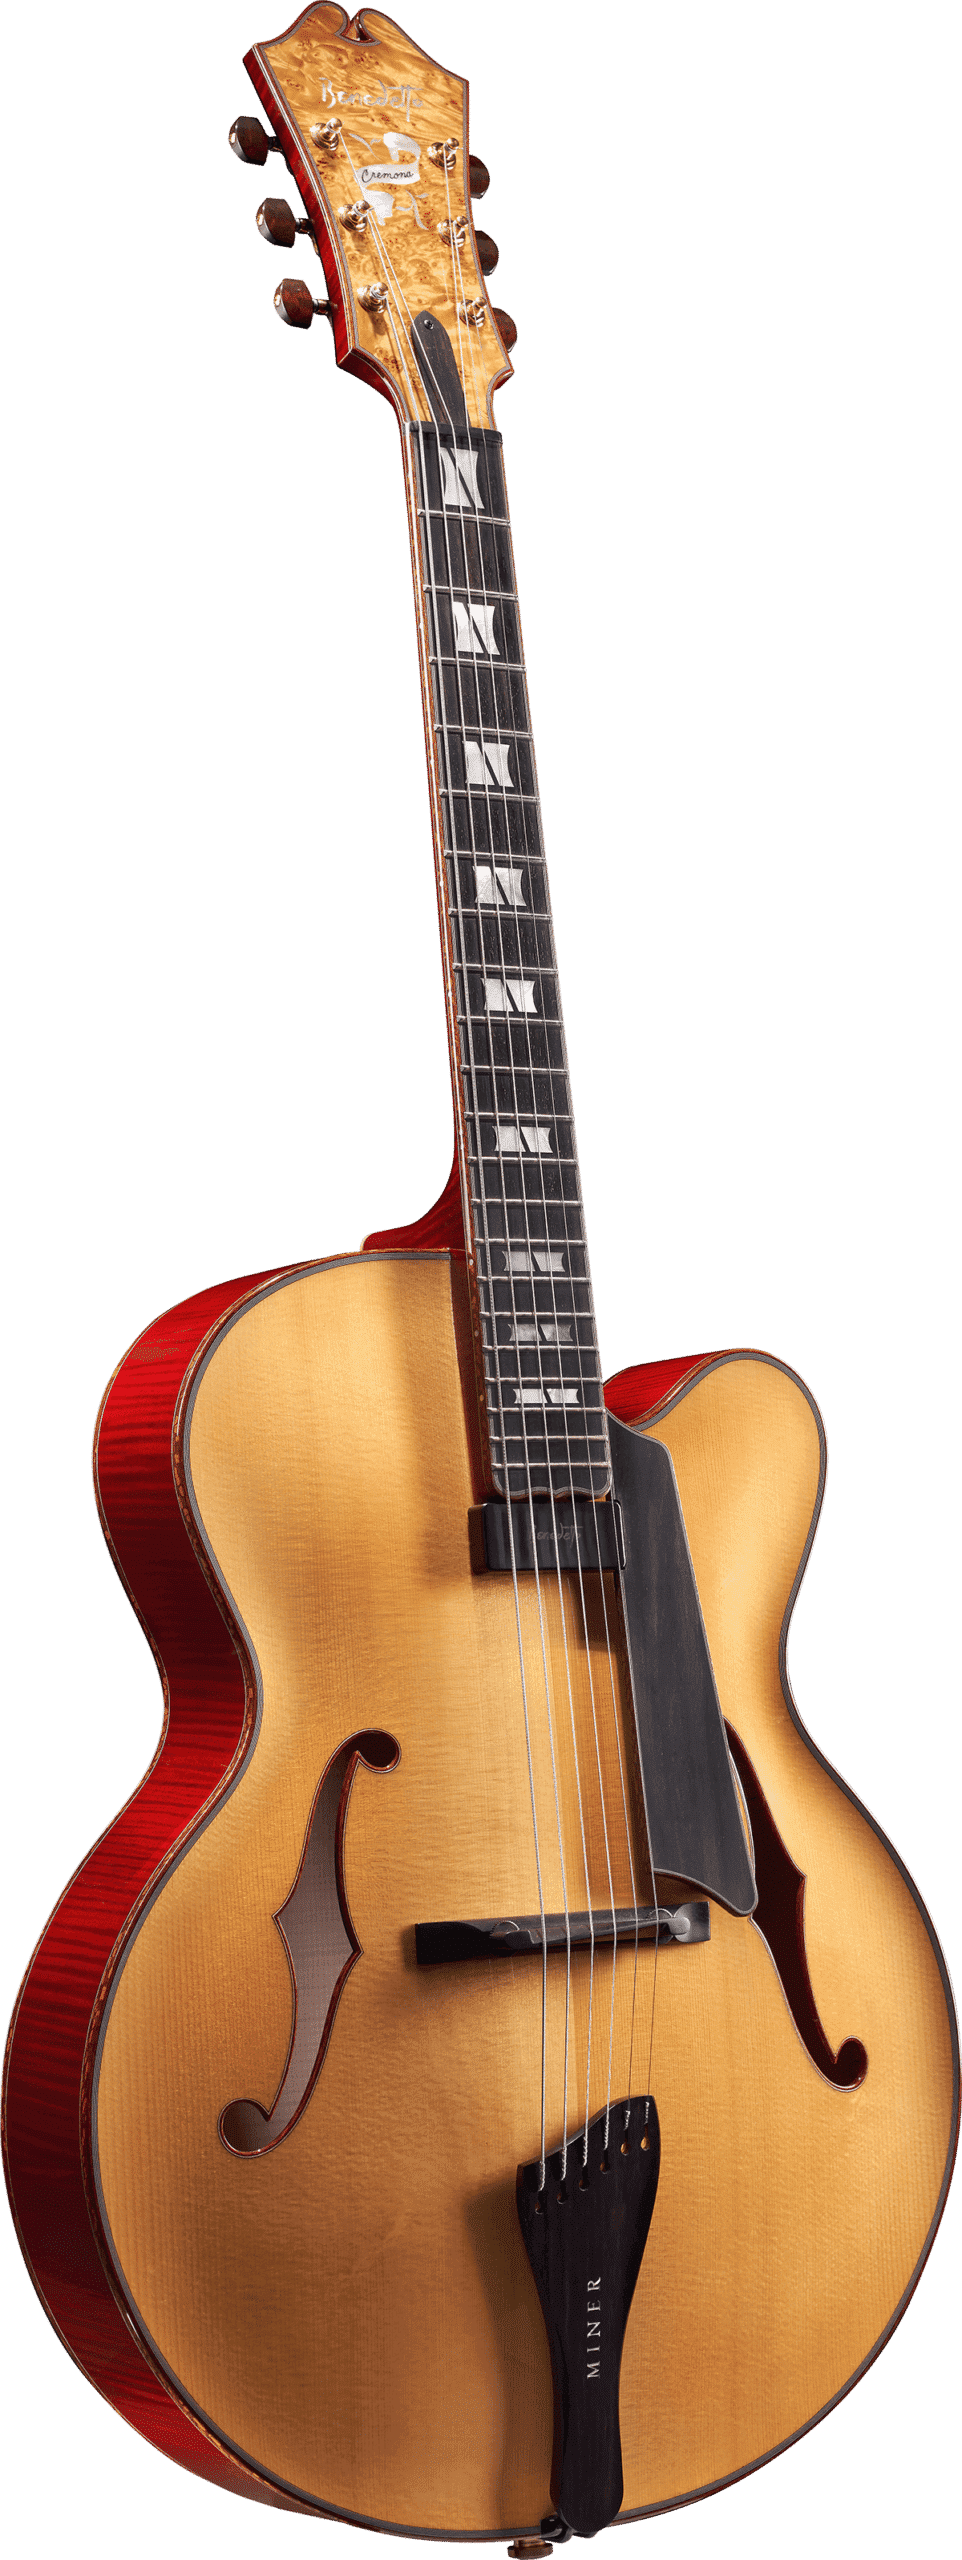 Cremona Guitar Model